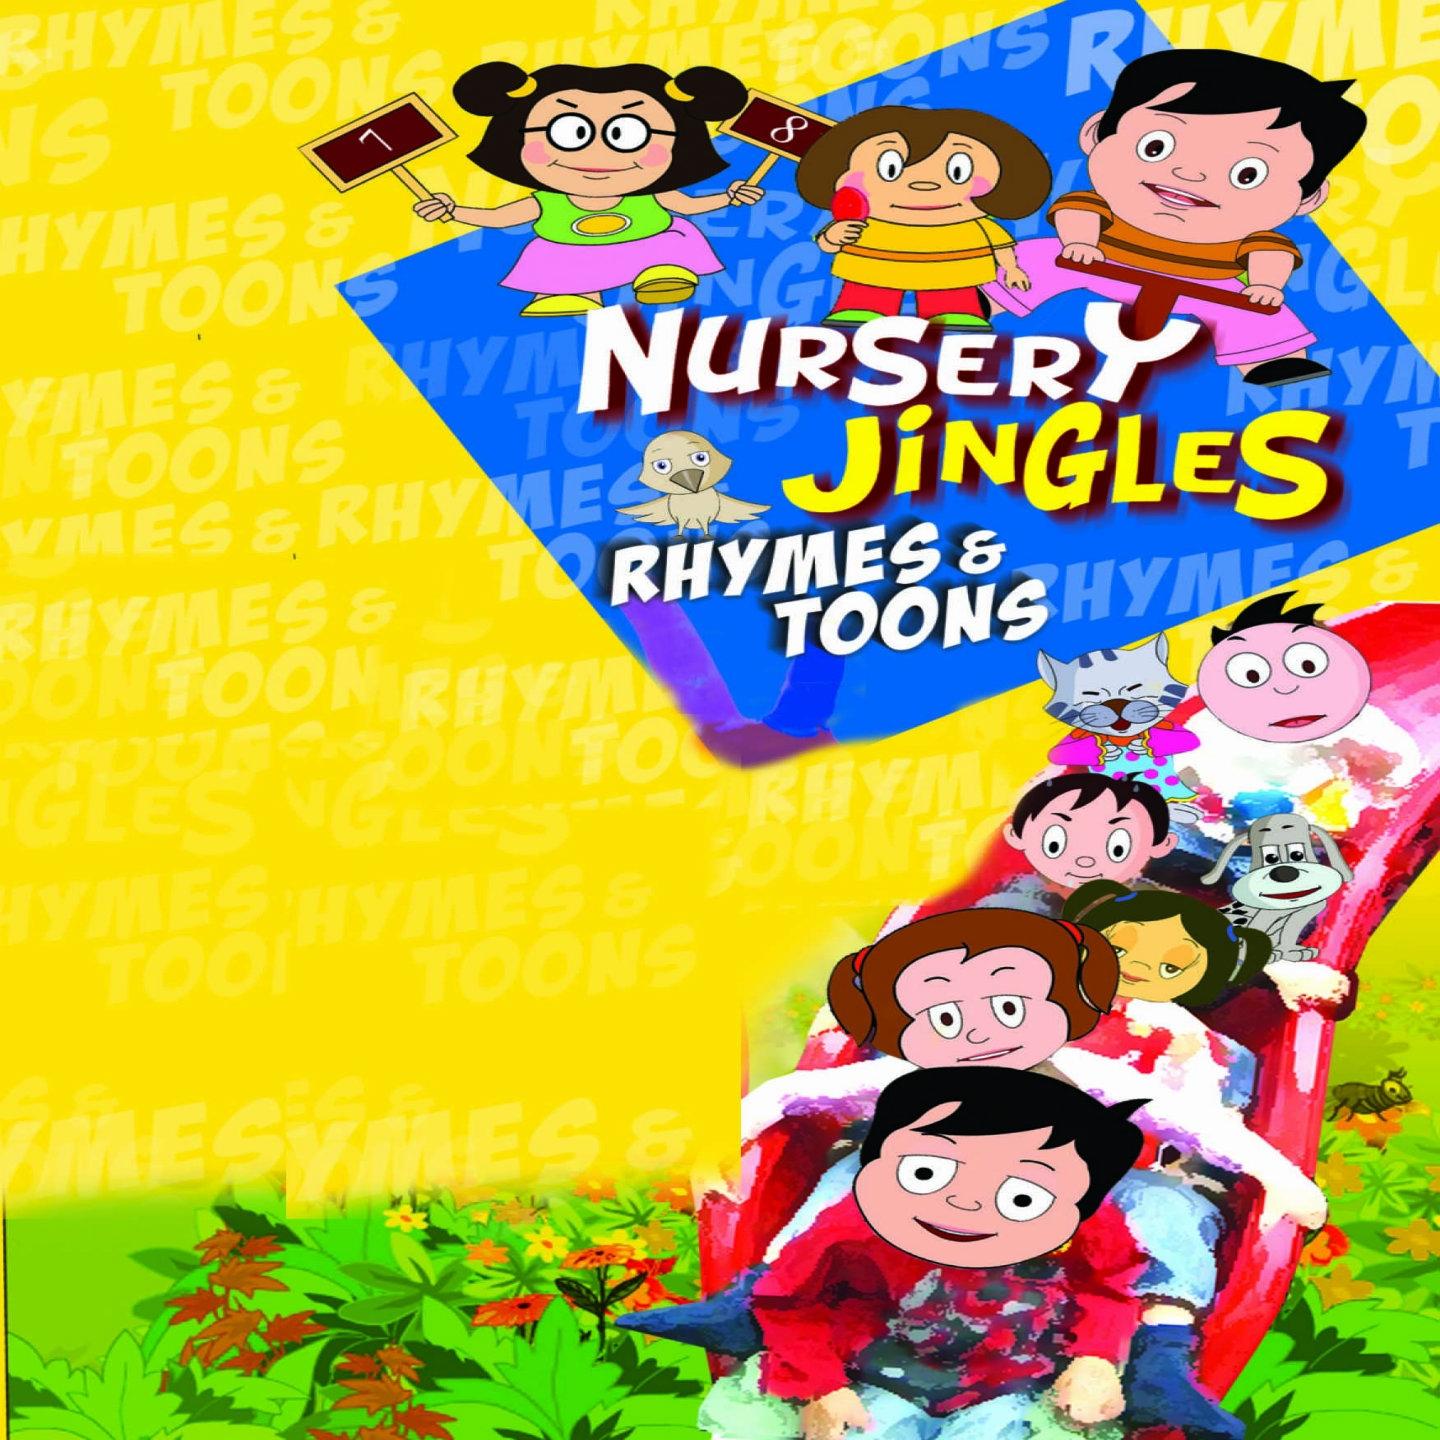 Nursery Jingles Rhymes & Toons